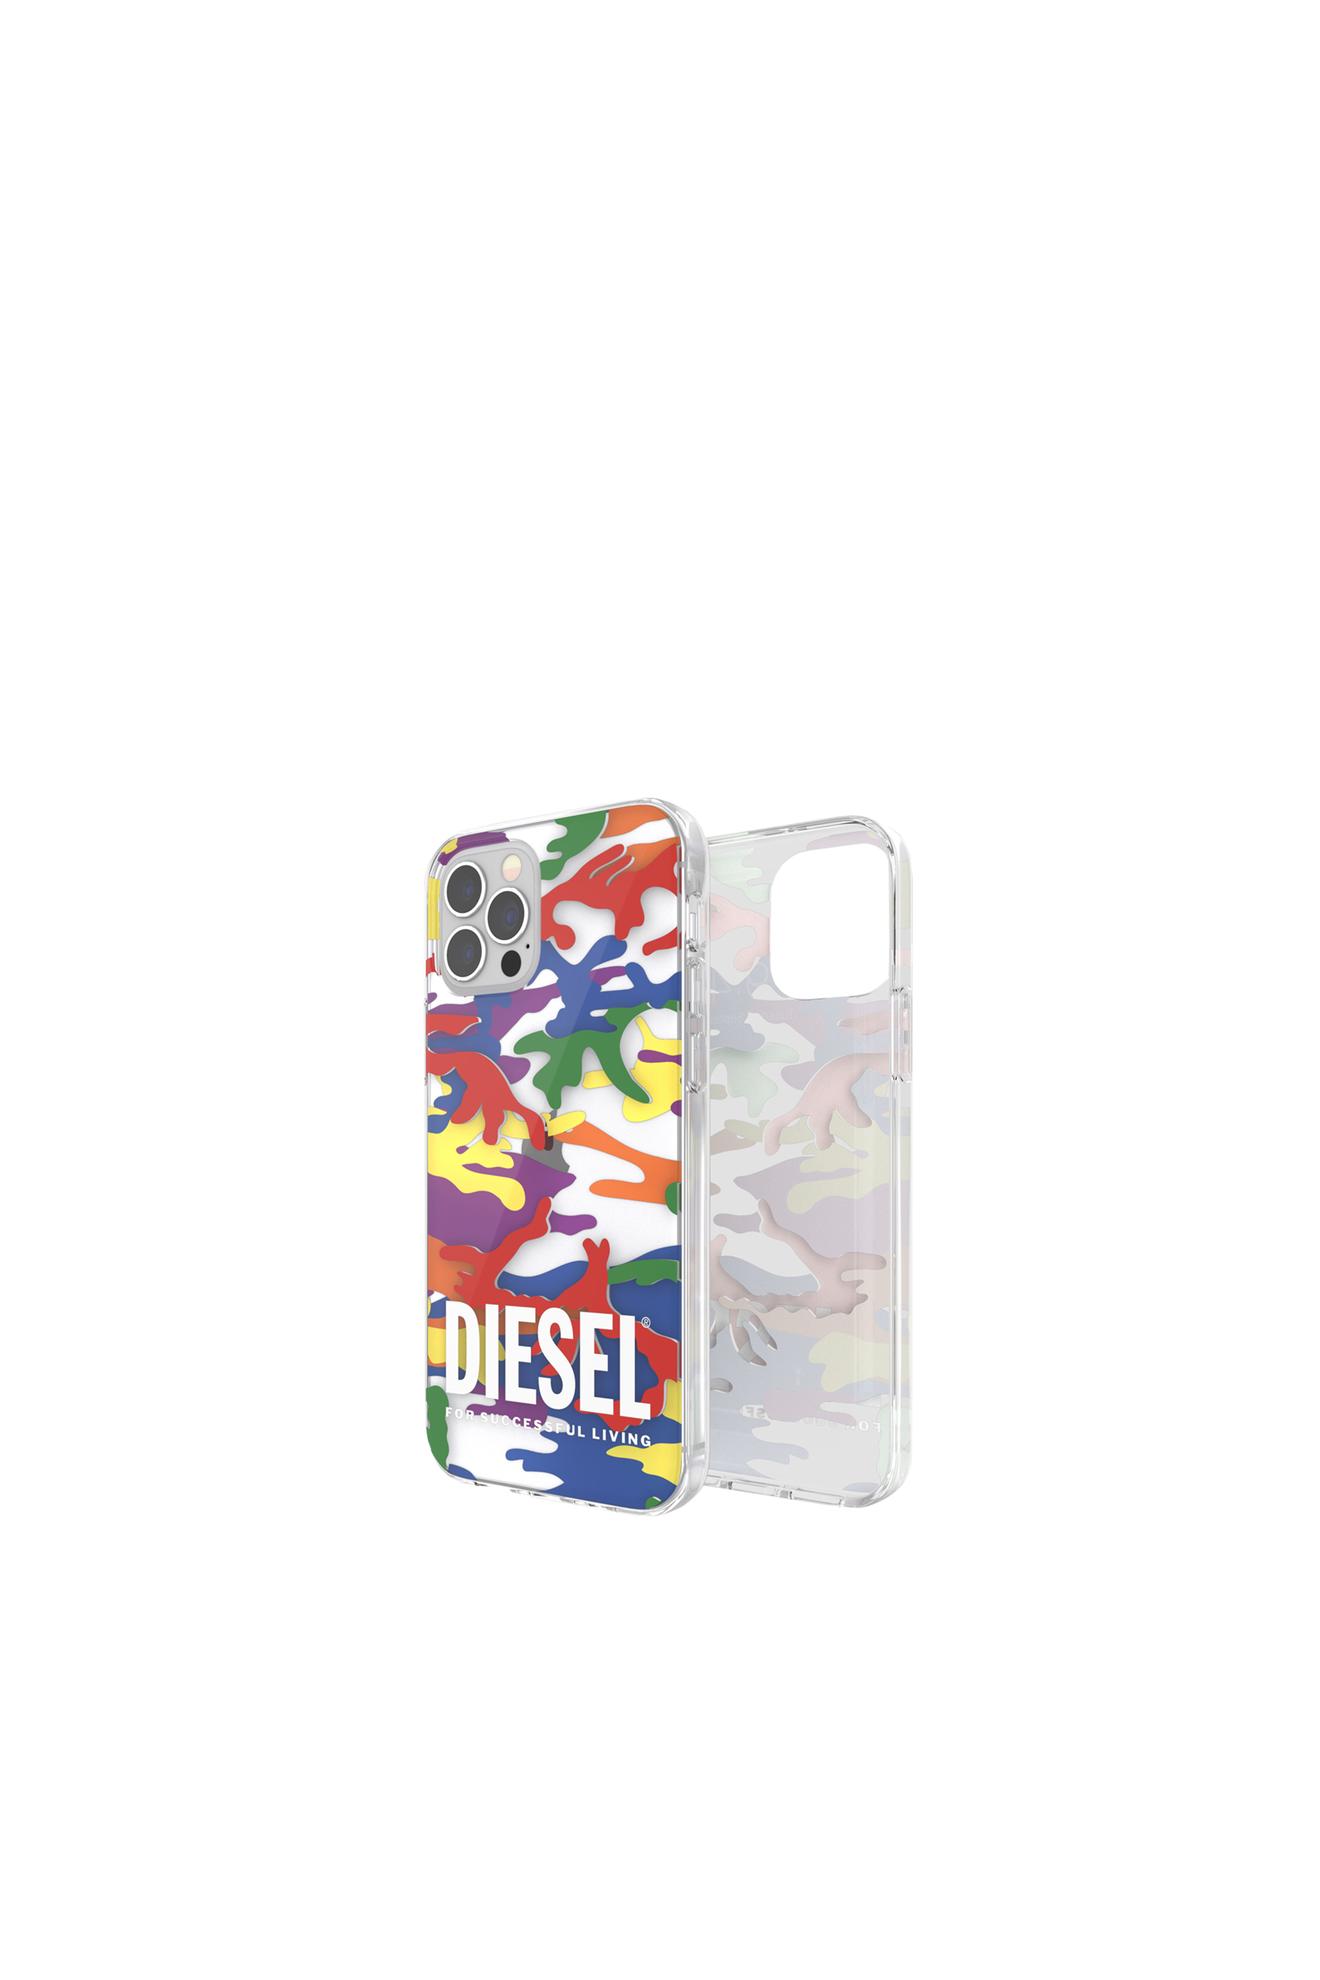 Aanbieding van Clear case Pride for iPhone 12 / 12 Pro voor 21€ bij Diesel